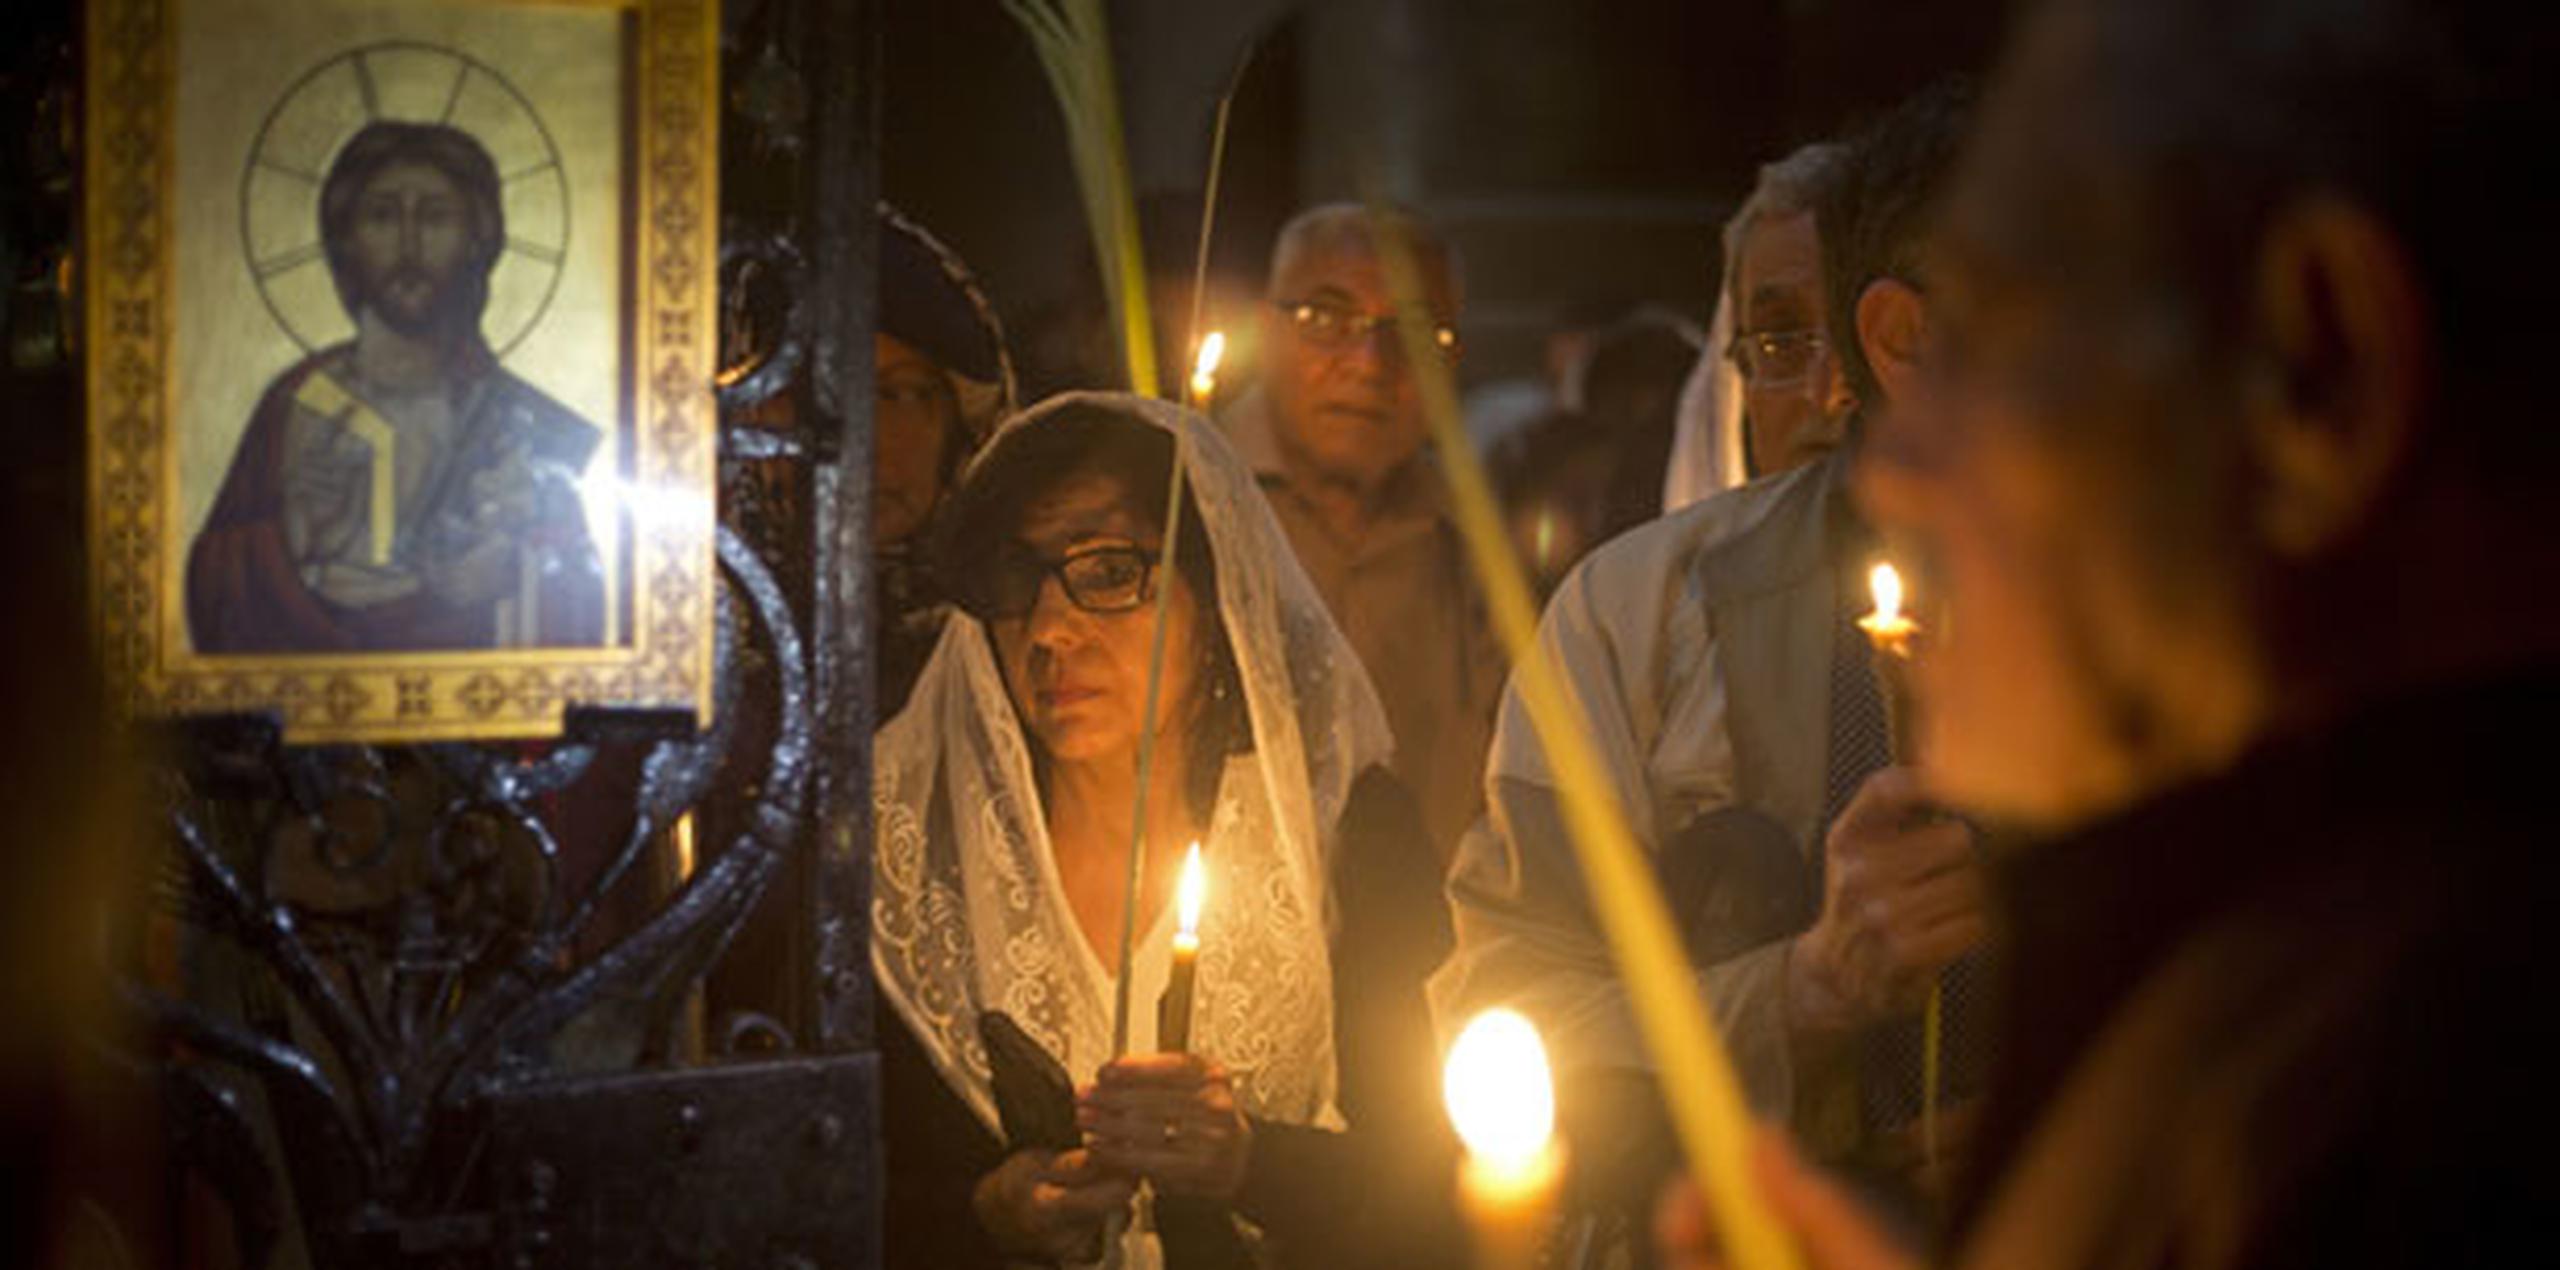 Los religiosos católicos asistieron a servicios mientras los cristianos ortodoxos celebraban el Domingo de Ramos. (AP)